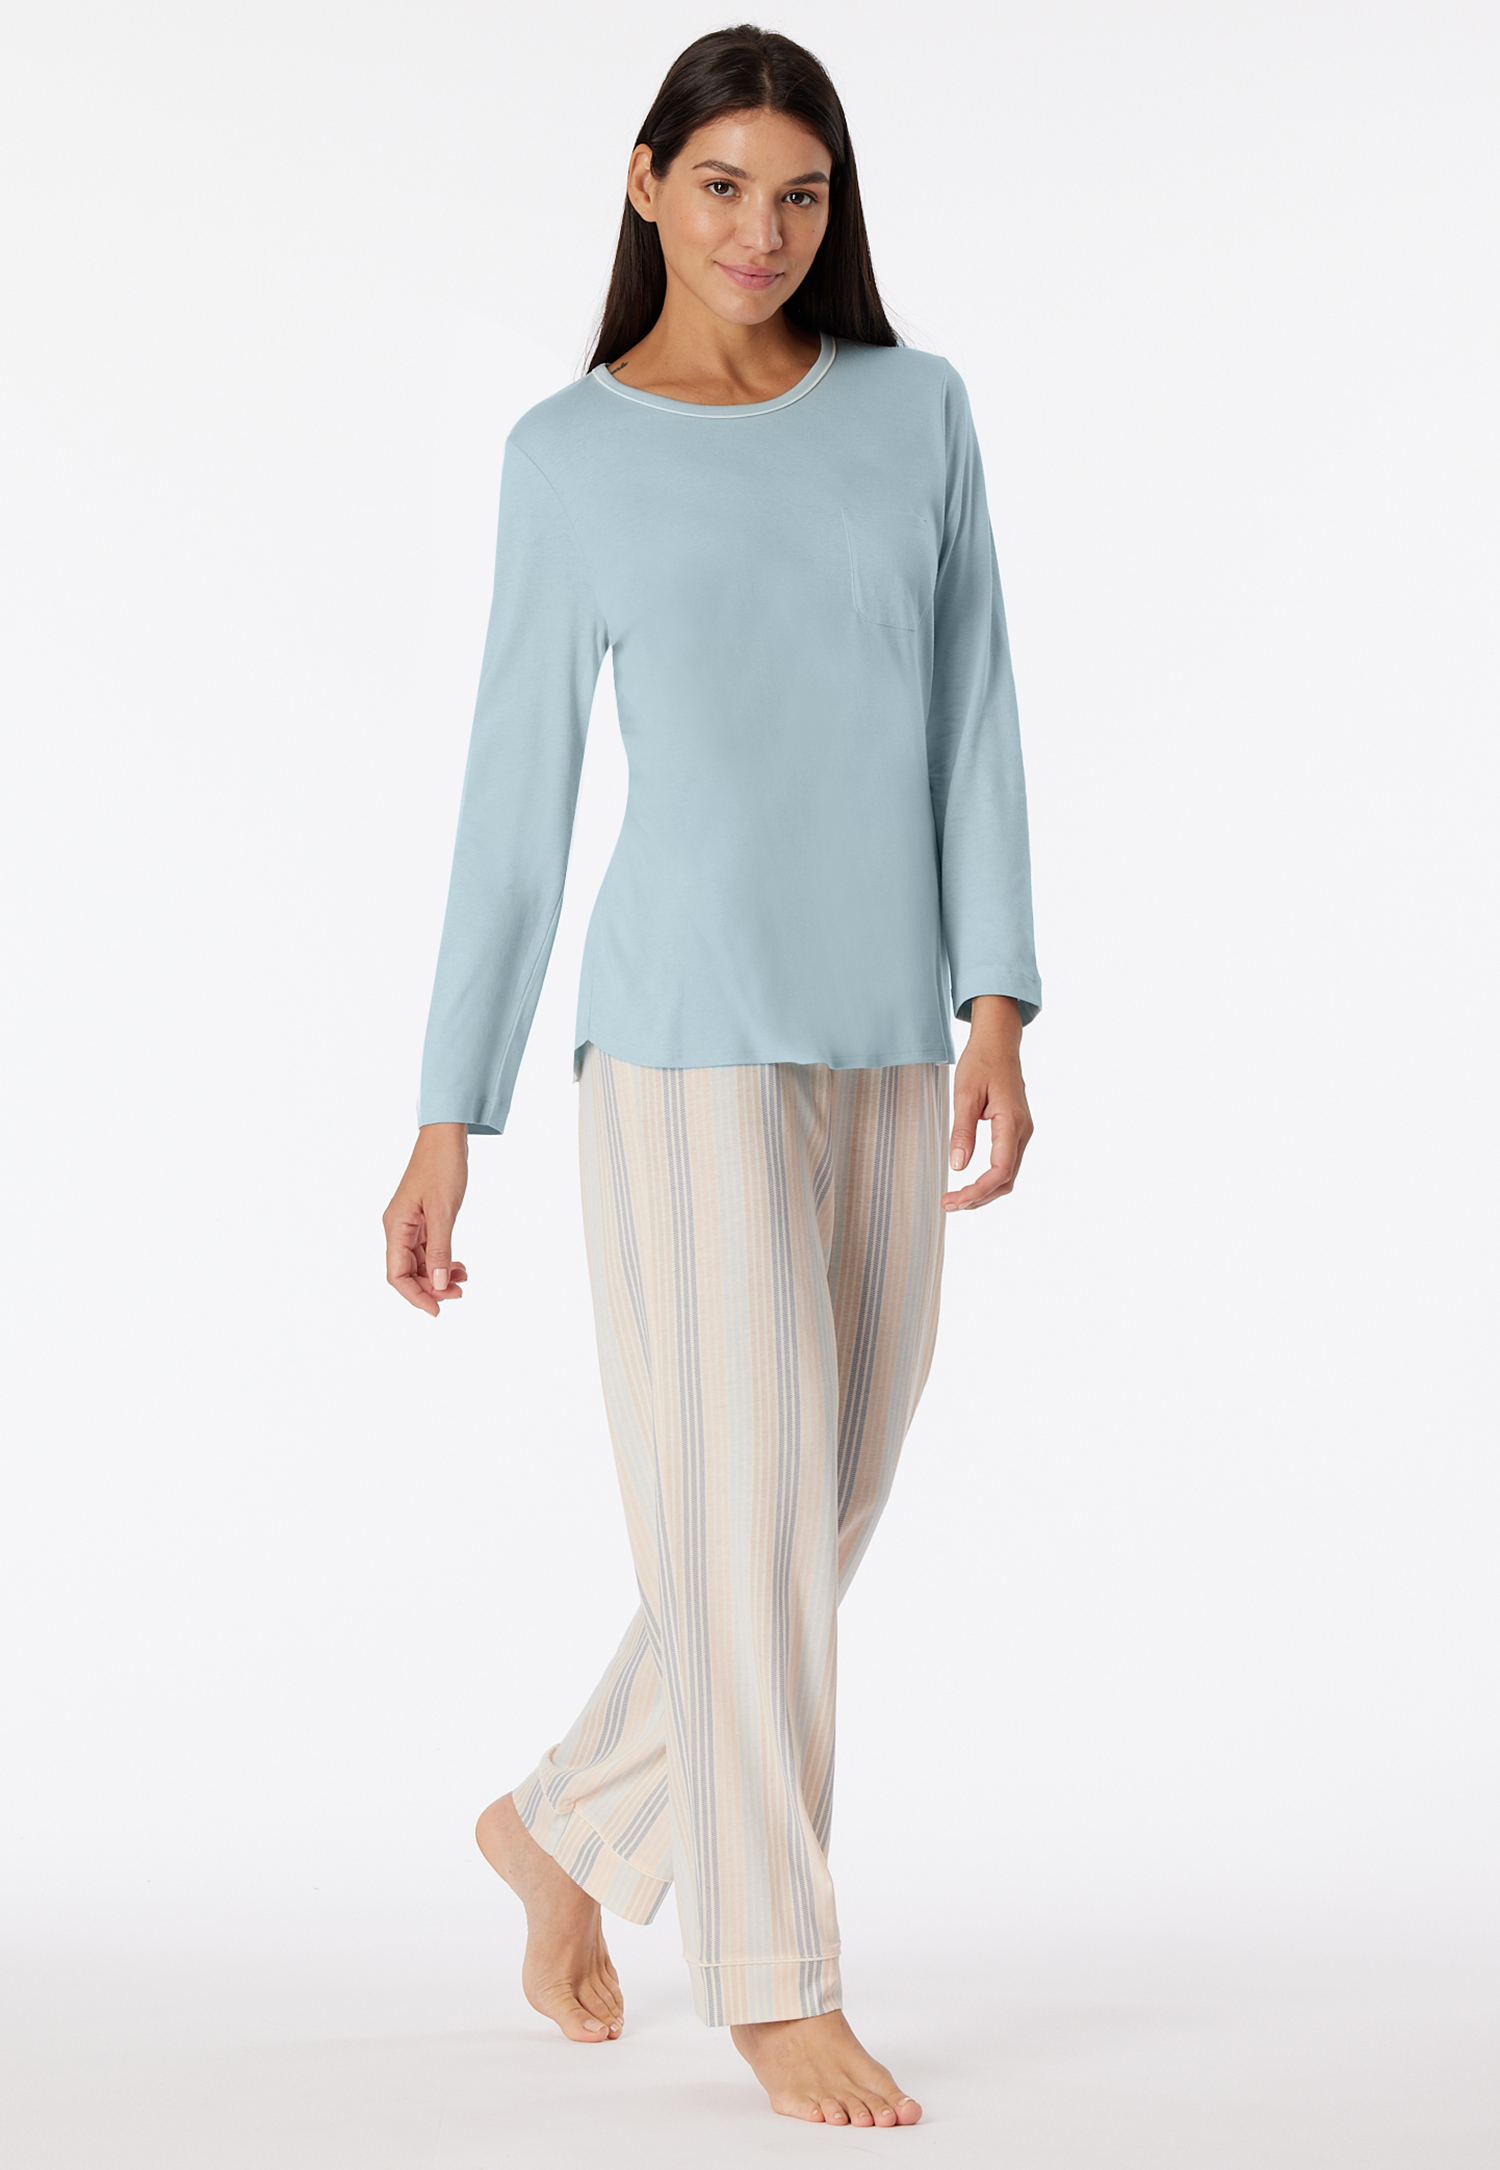 Schlafanzug lang bluebird - Comfort Nightwear 52 von Schiesser